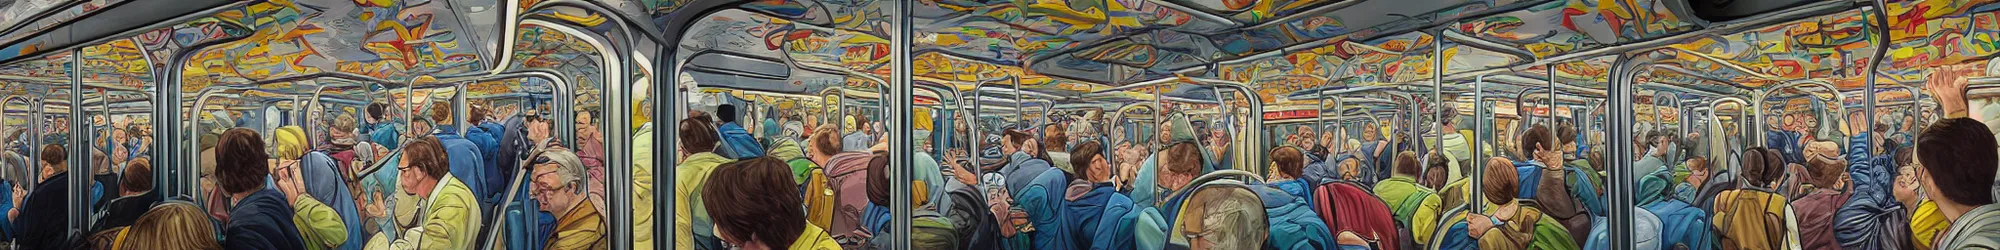 Prompt: full train graffiti showing retrofuturism escher motif